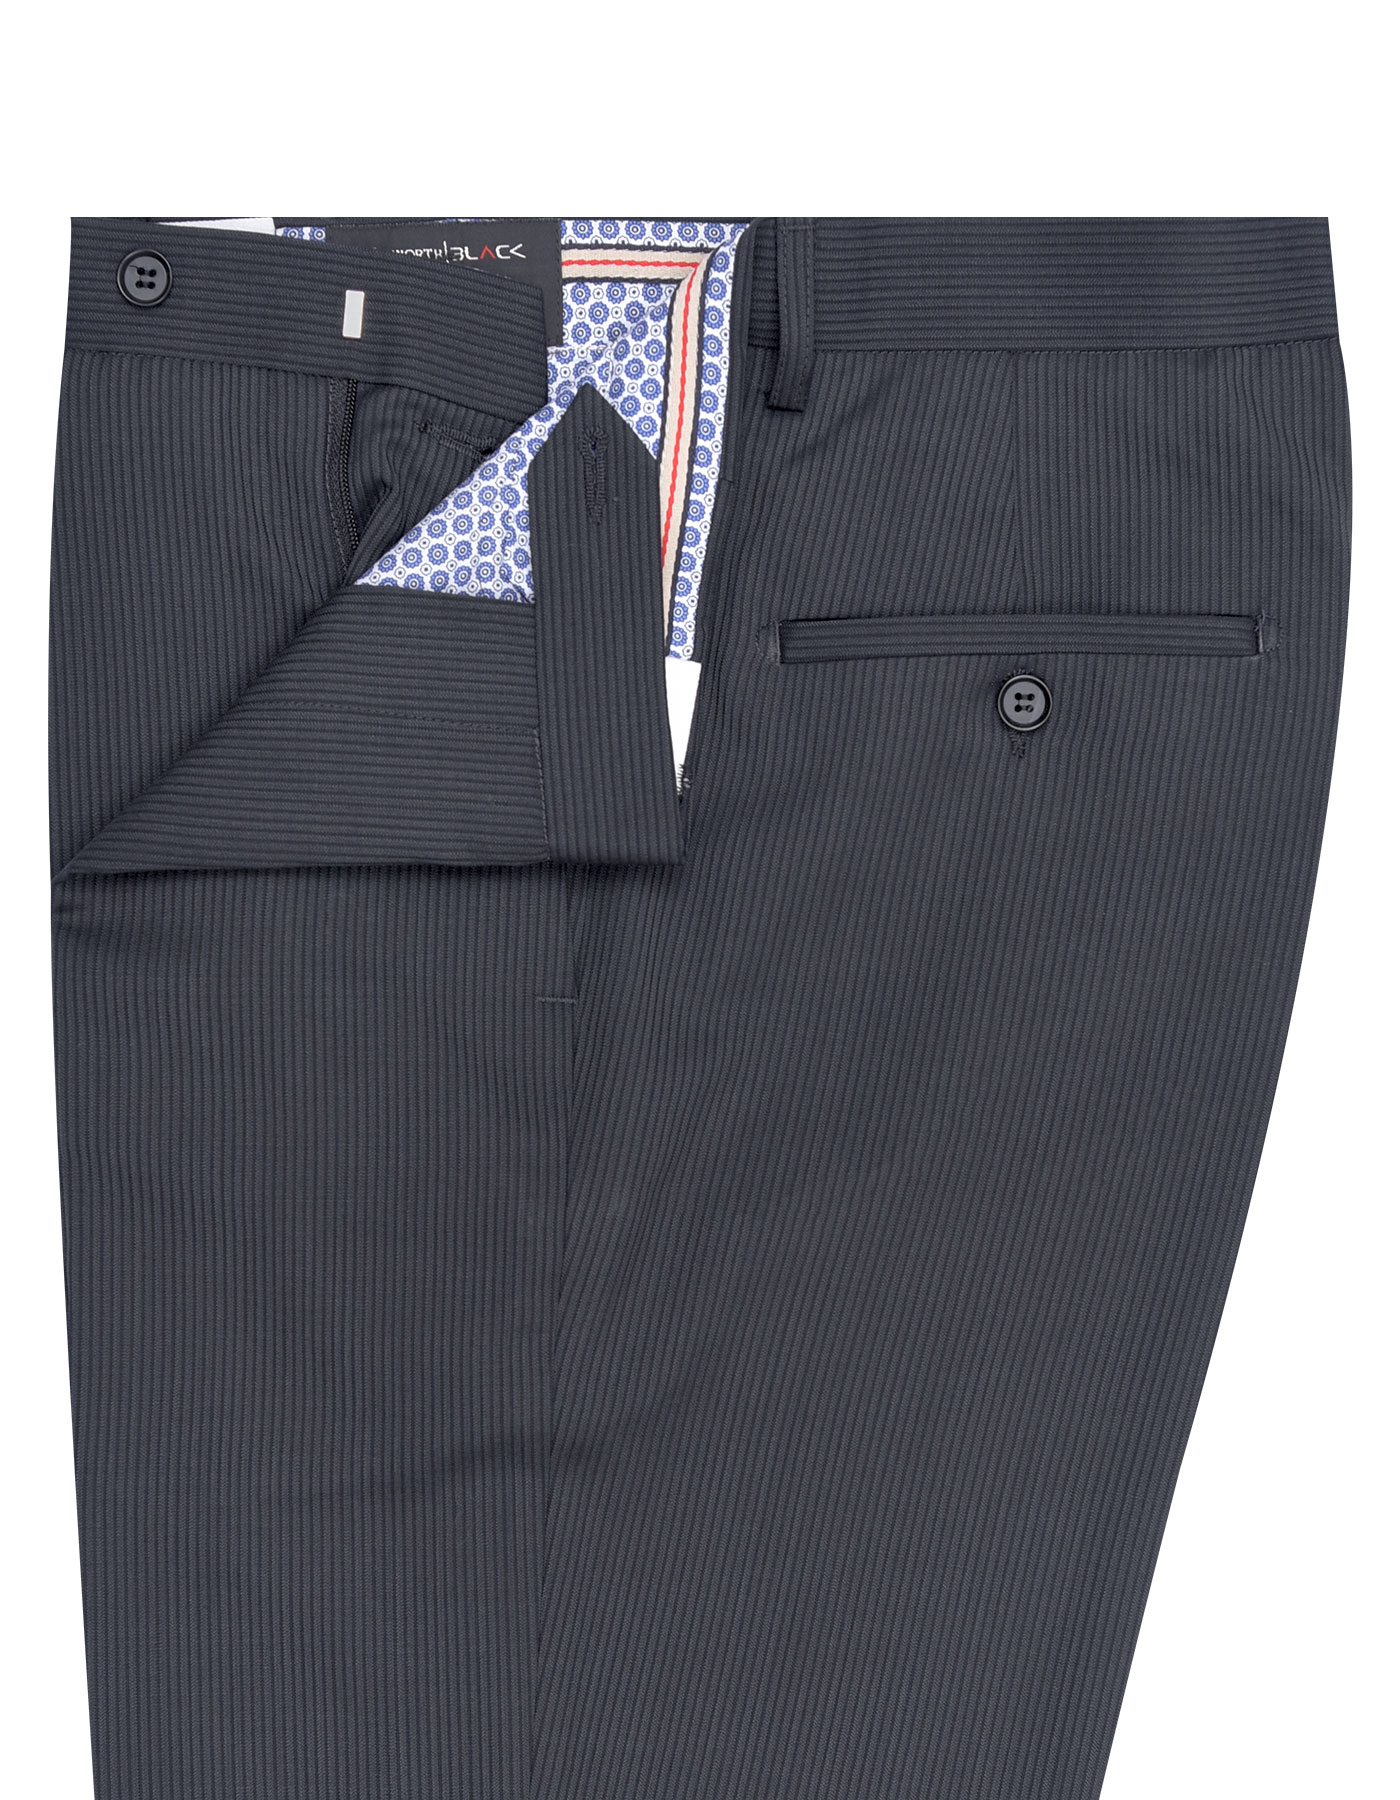 Grey Stripe Formal Trouser For Men